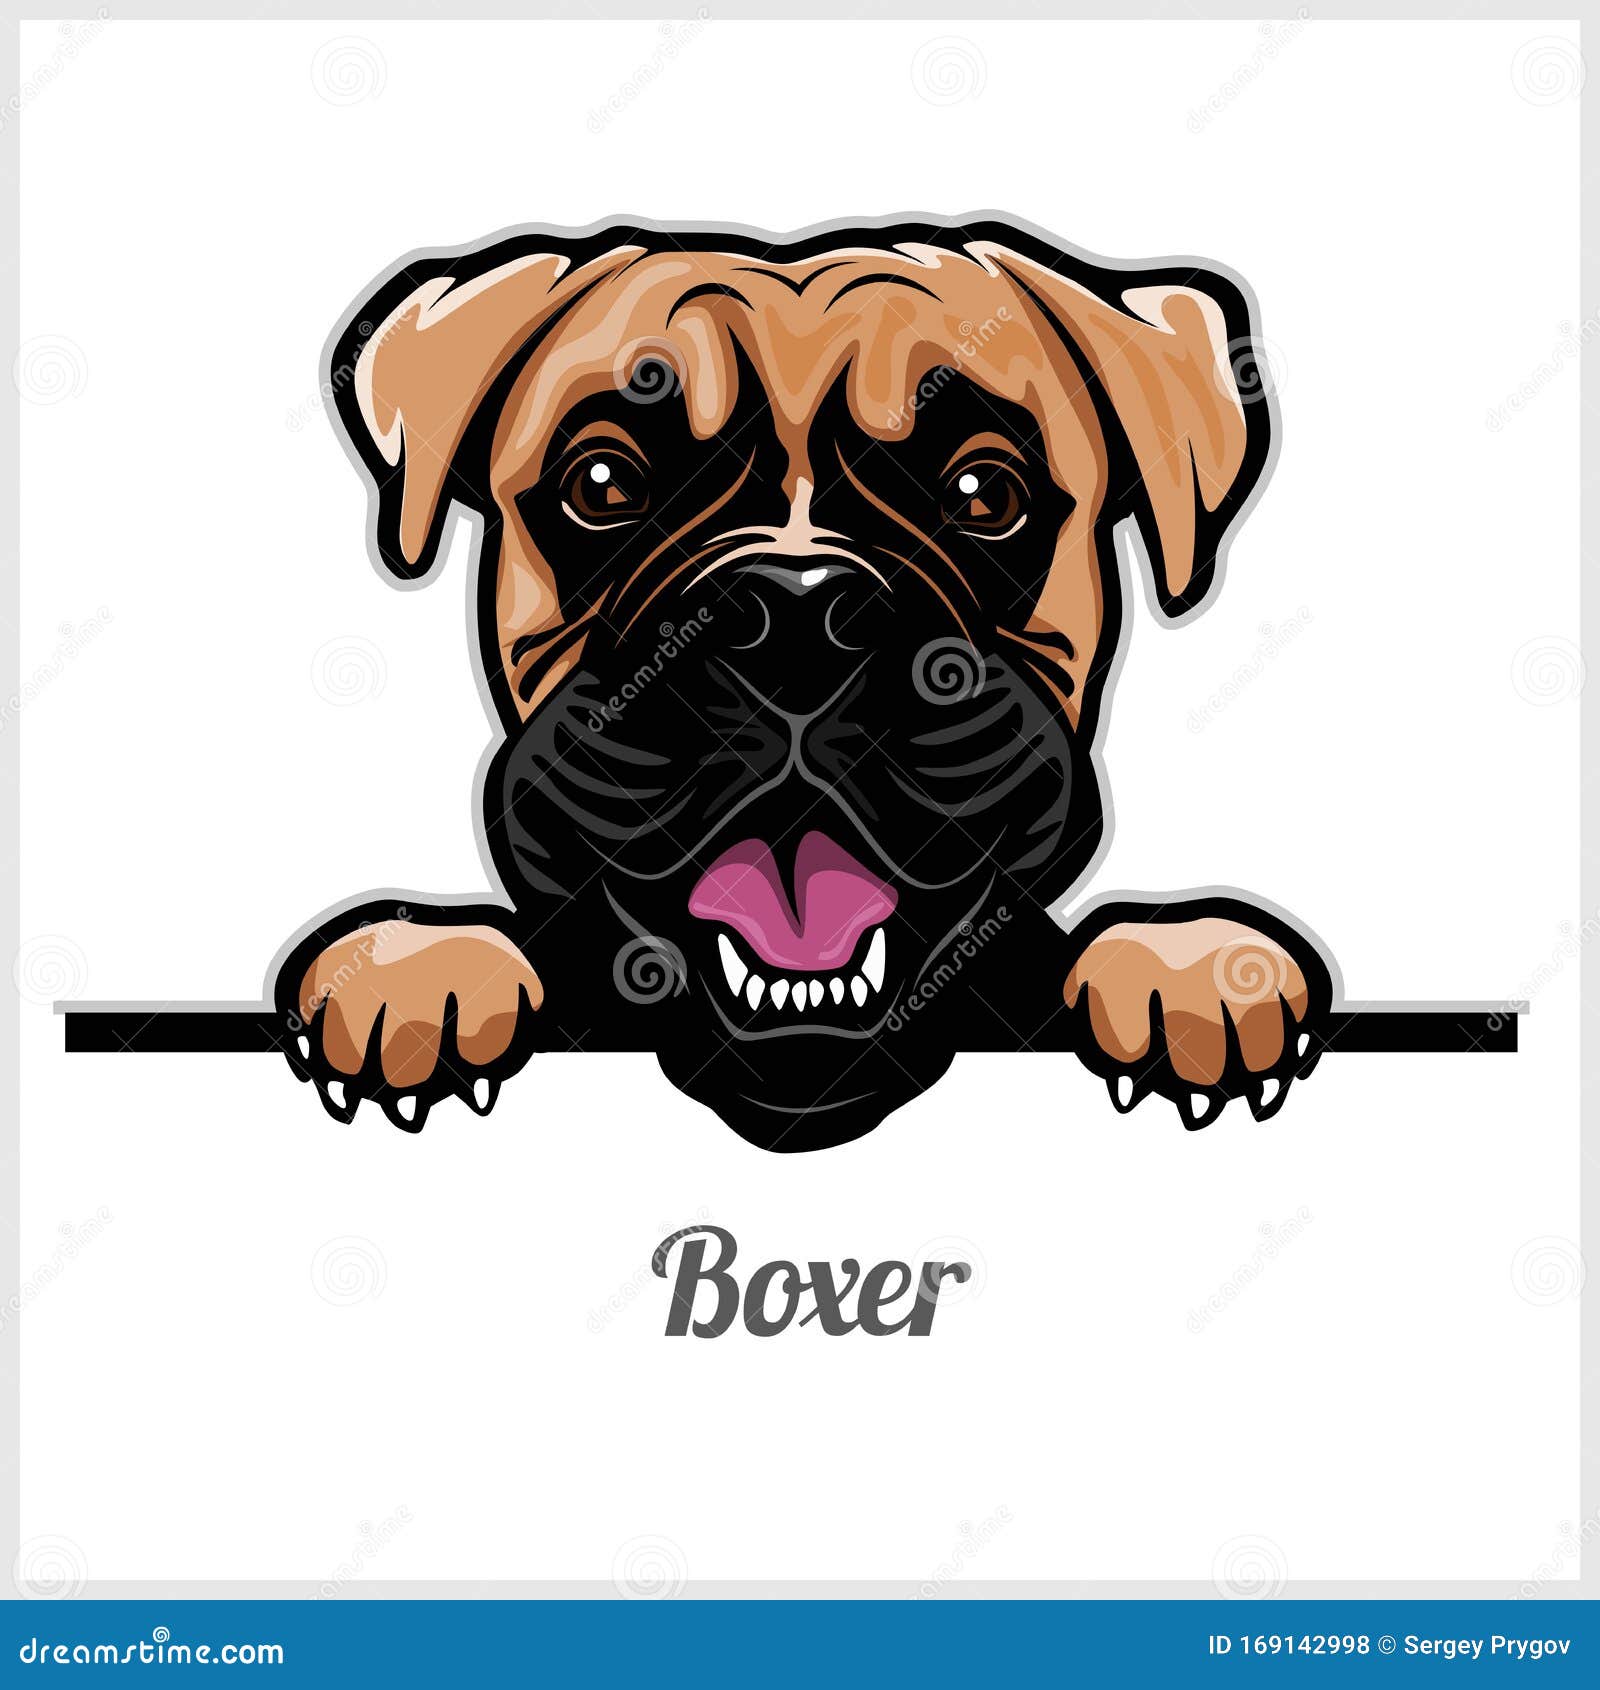 Boxer Breed Dog For Logo Design Cartoon Vector | CartoonDealer.com